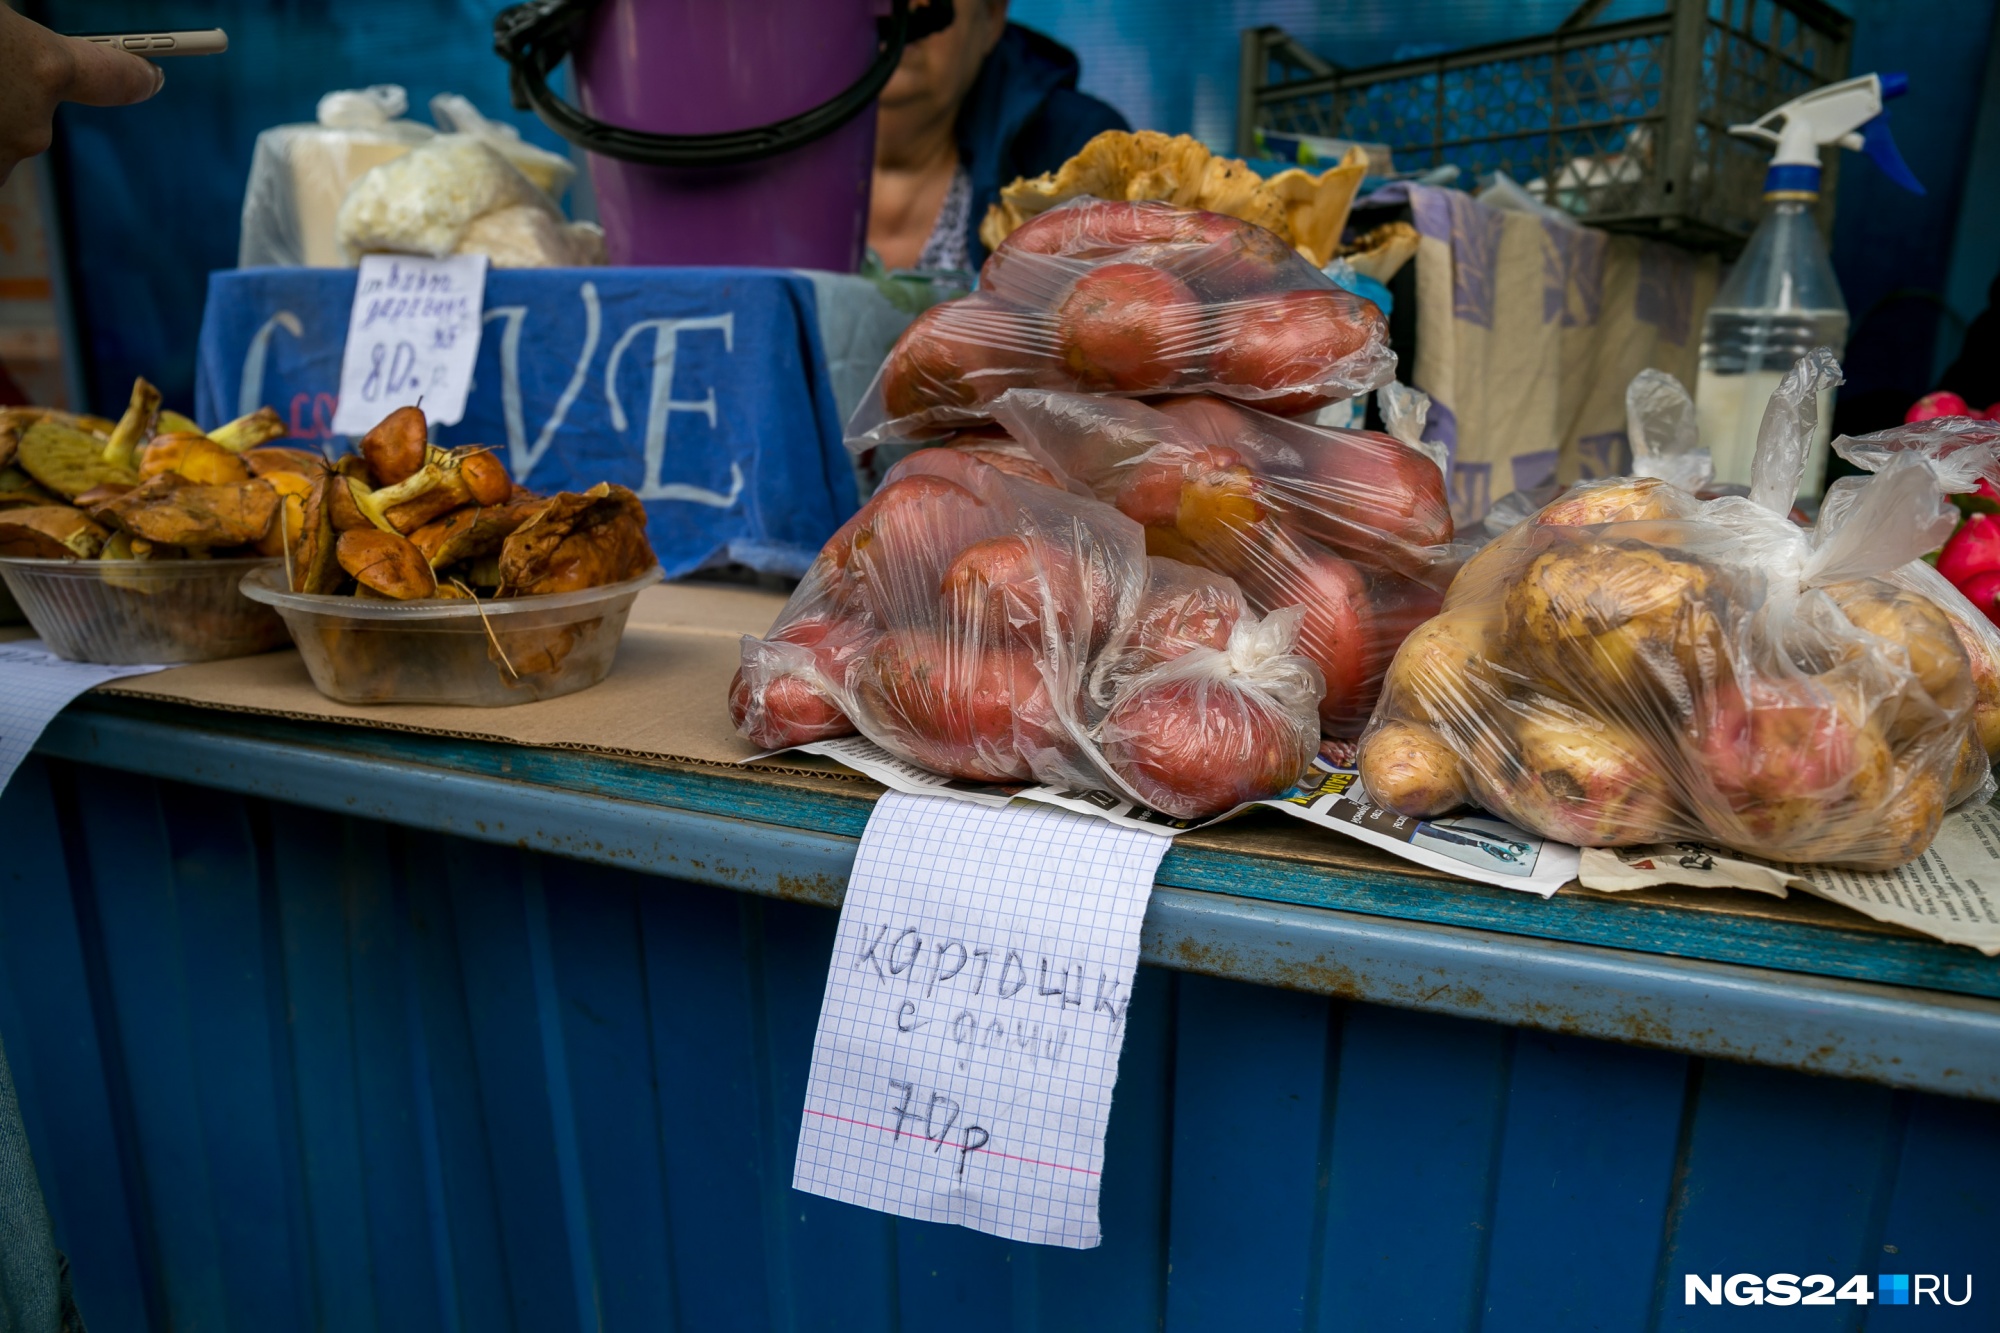 Желтая картошка обычно продается дороже, от 100 рублей 